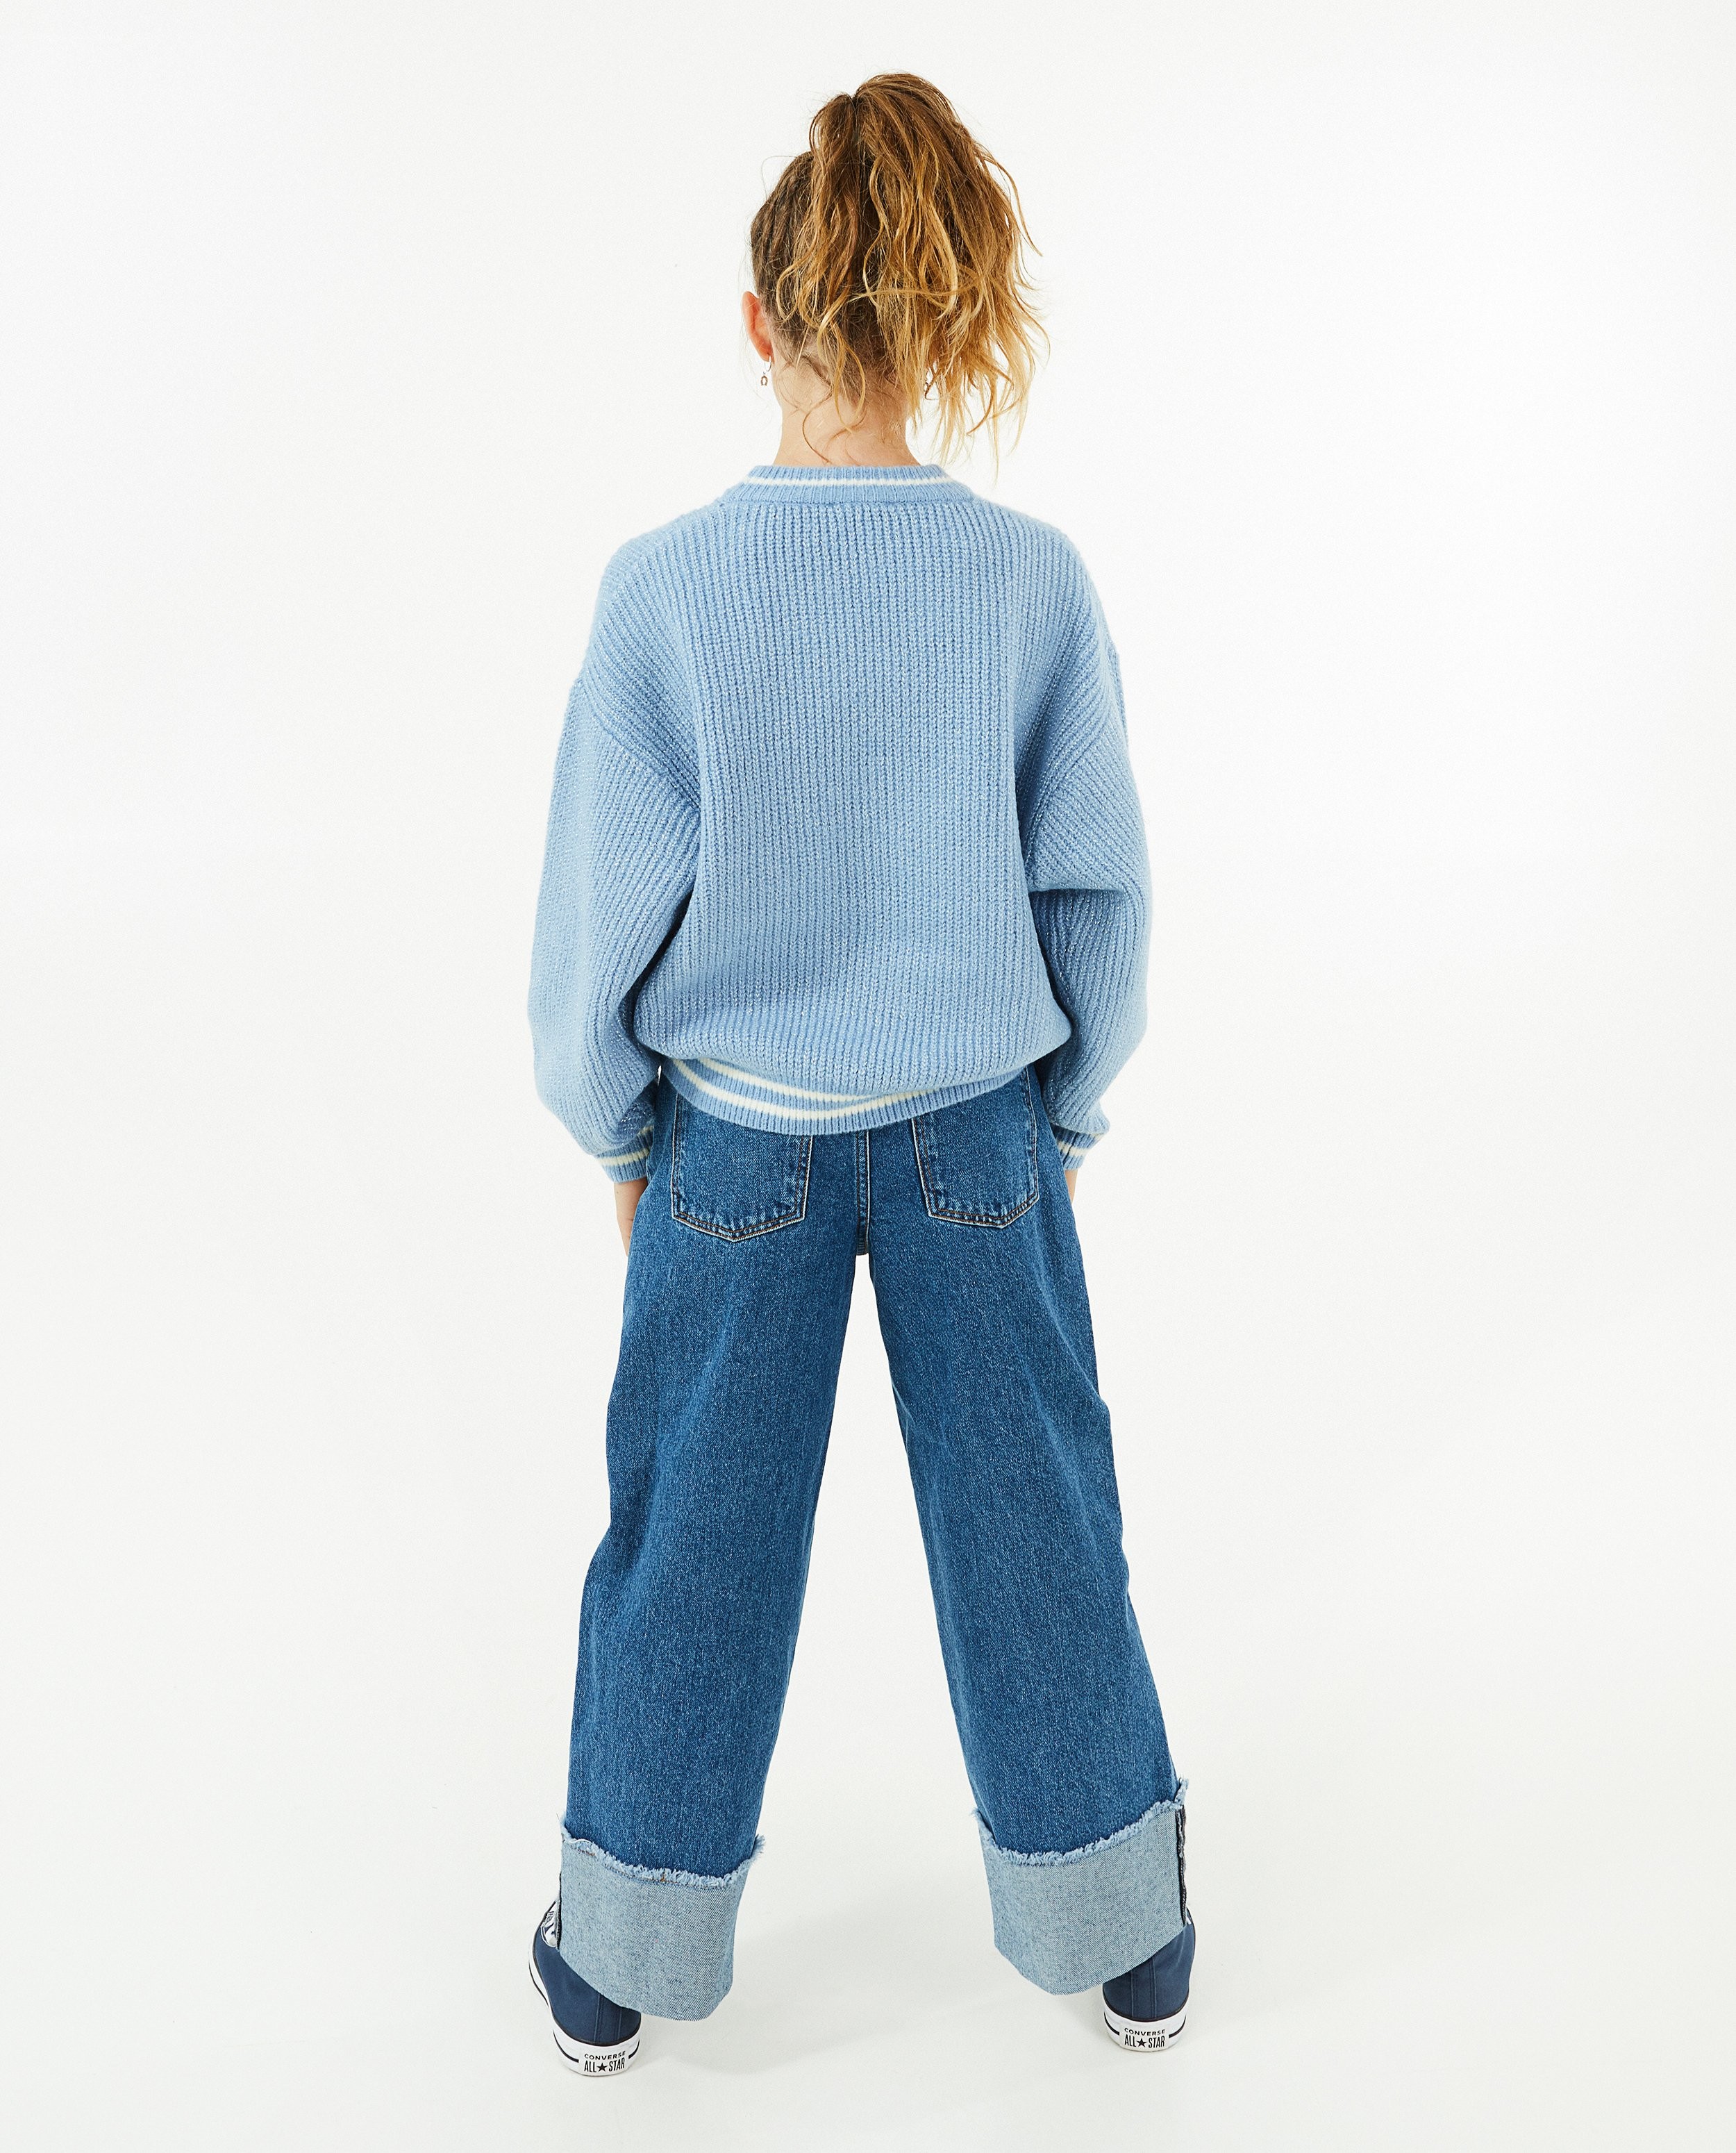 Truien - Blauwe trui met metaaldraad